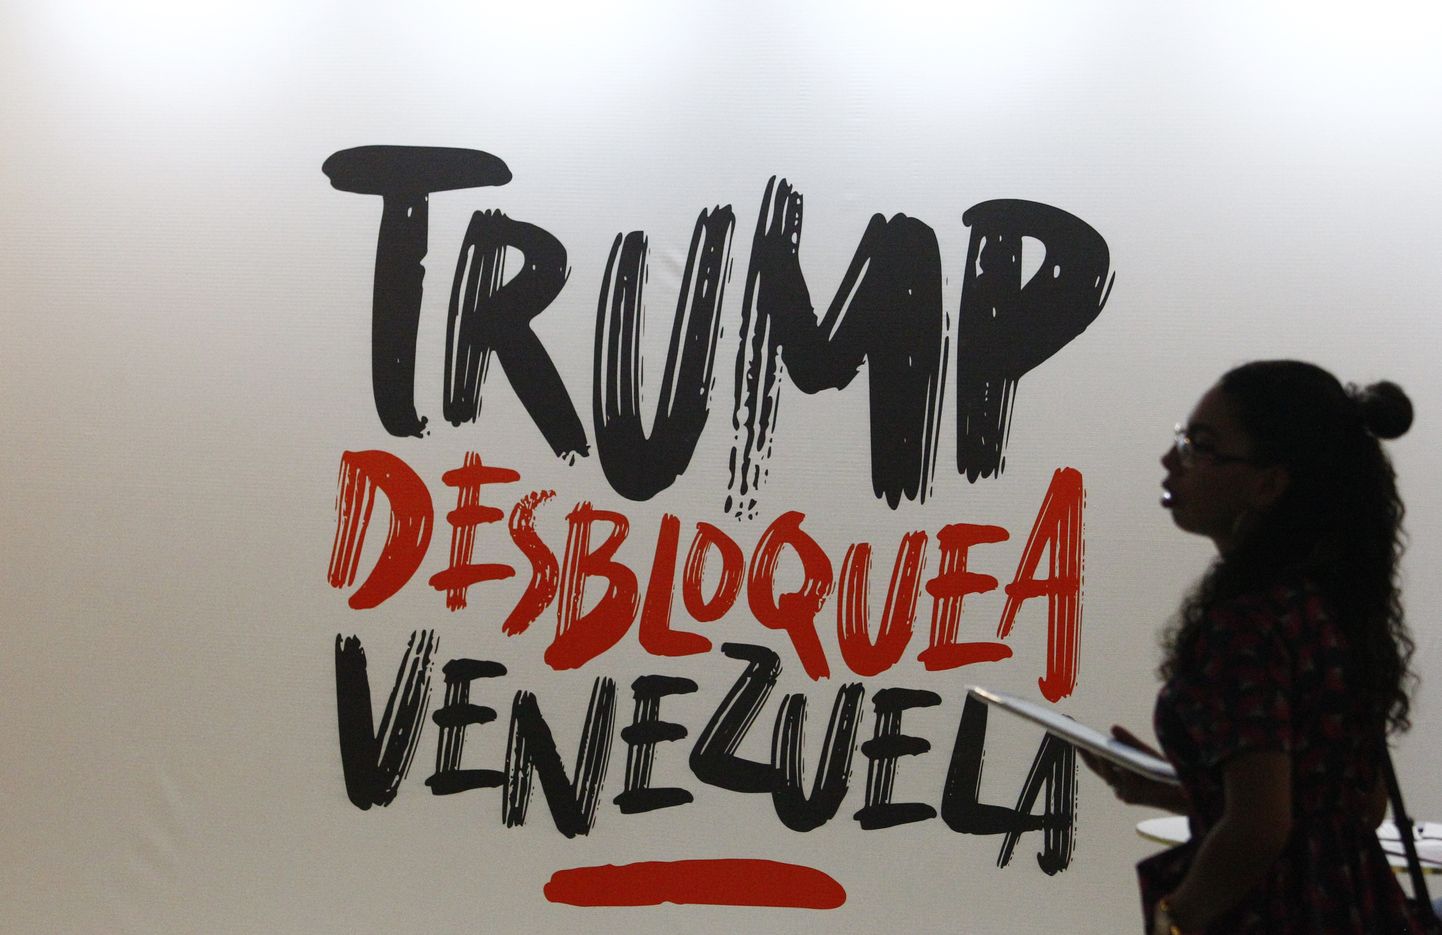 Naine kõndimas mööda sildist, mis ütleb hispaania keeles "Trump, võta Venezuela lukust lahti". See viitab Venezuela valitsuse seisukohta, et riigi pikalt kestnud majandusprobleemide taga on USA sanktsioonid, mitte Venezuela võimude küündimatus.